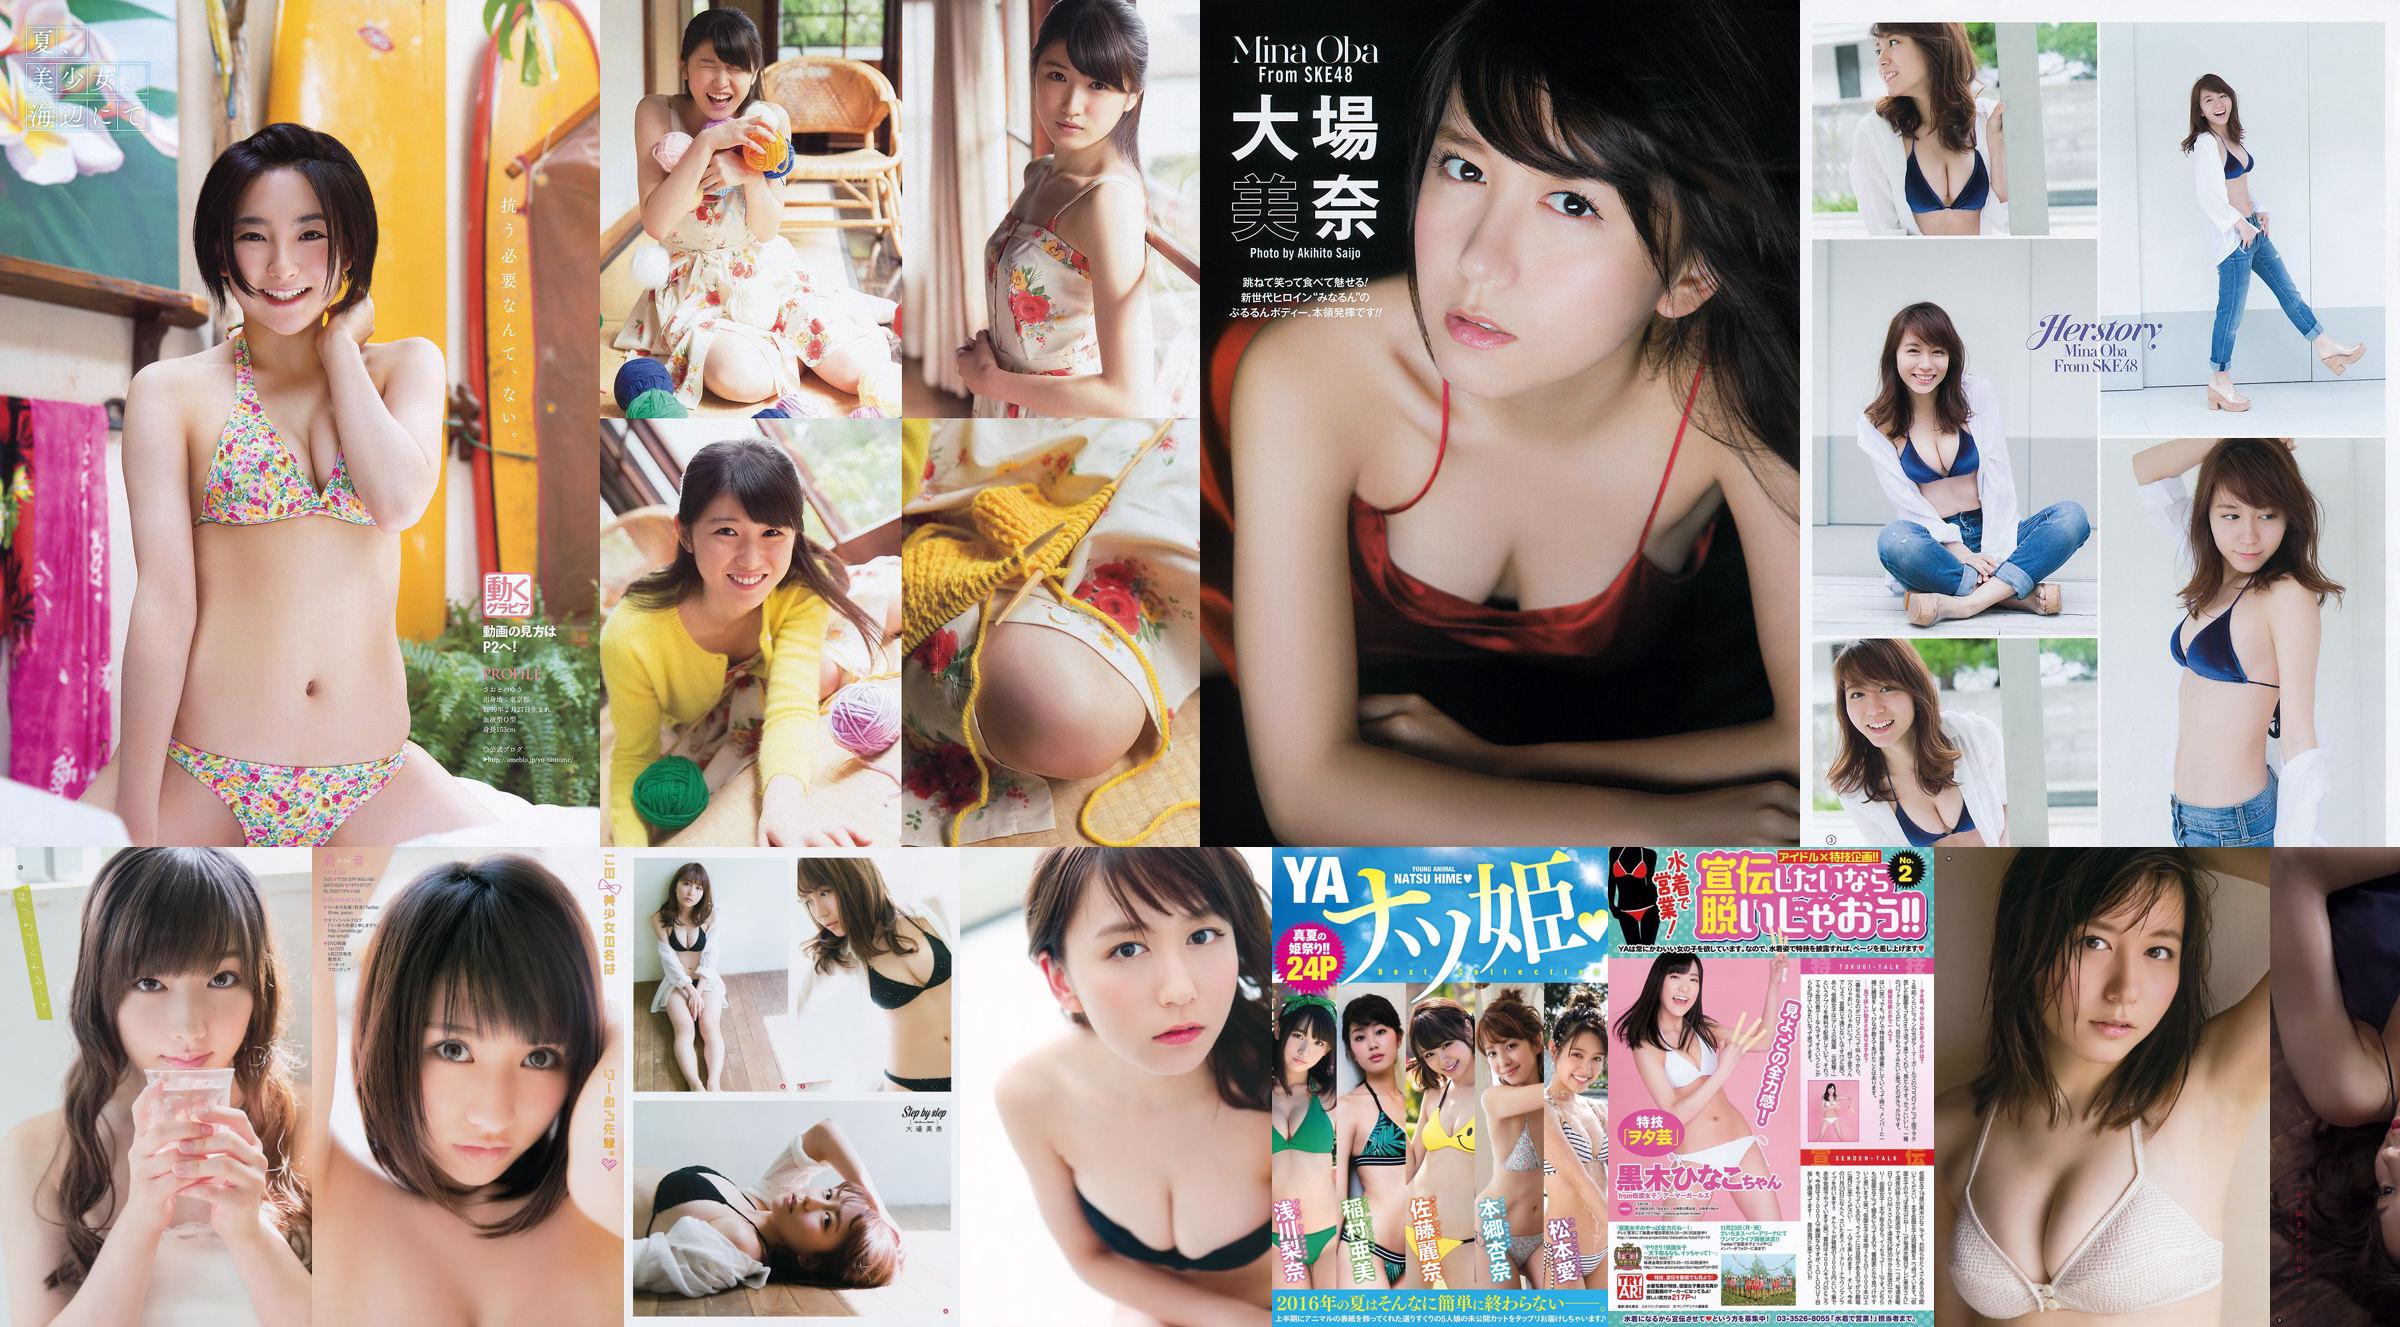 [Young Gangan] Mina Oba Mizuki Fukumura Minori Inudo Hikaru Aoyama 2014 No.21 Foto No.17398e Pagina 2